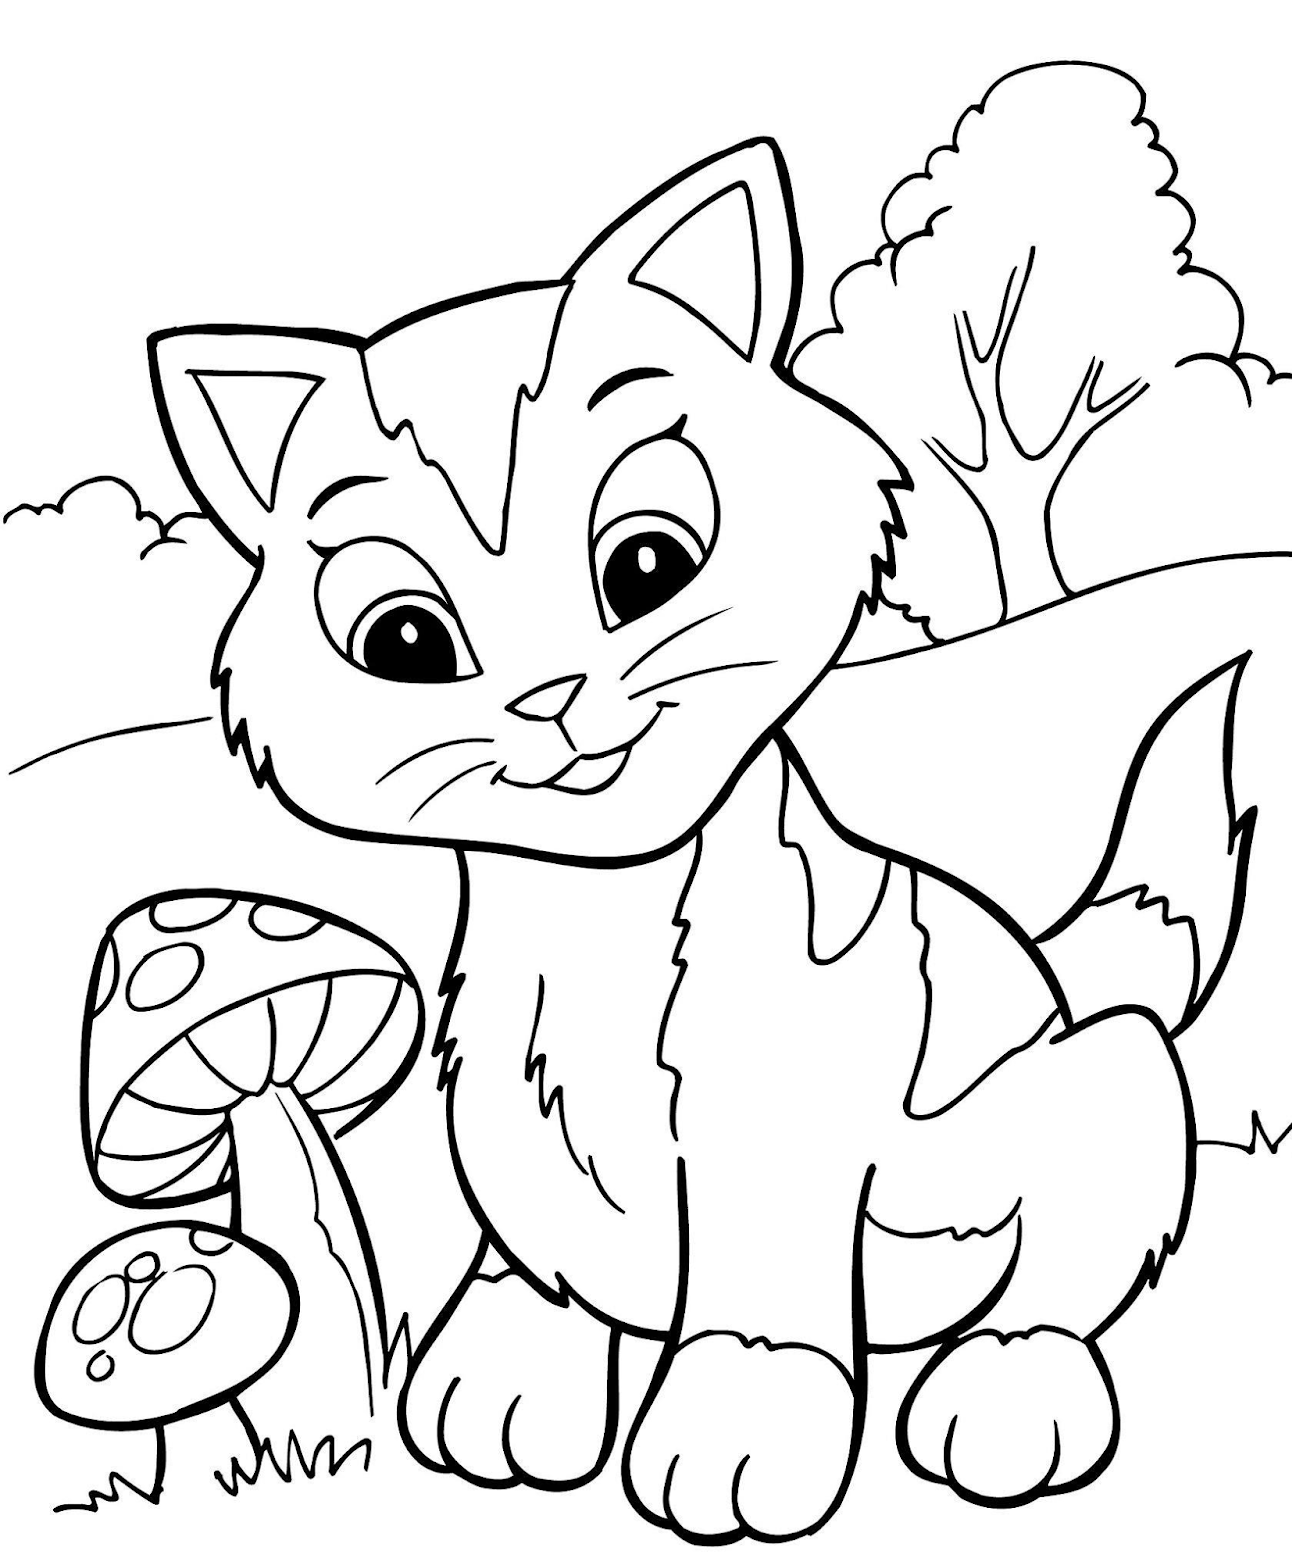 Раскраска Кот с бабочкой | Раскраски антистресс Кошки. Сложные раскраски с кошками для взрослых.